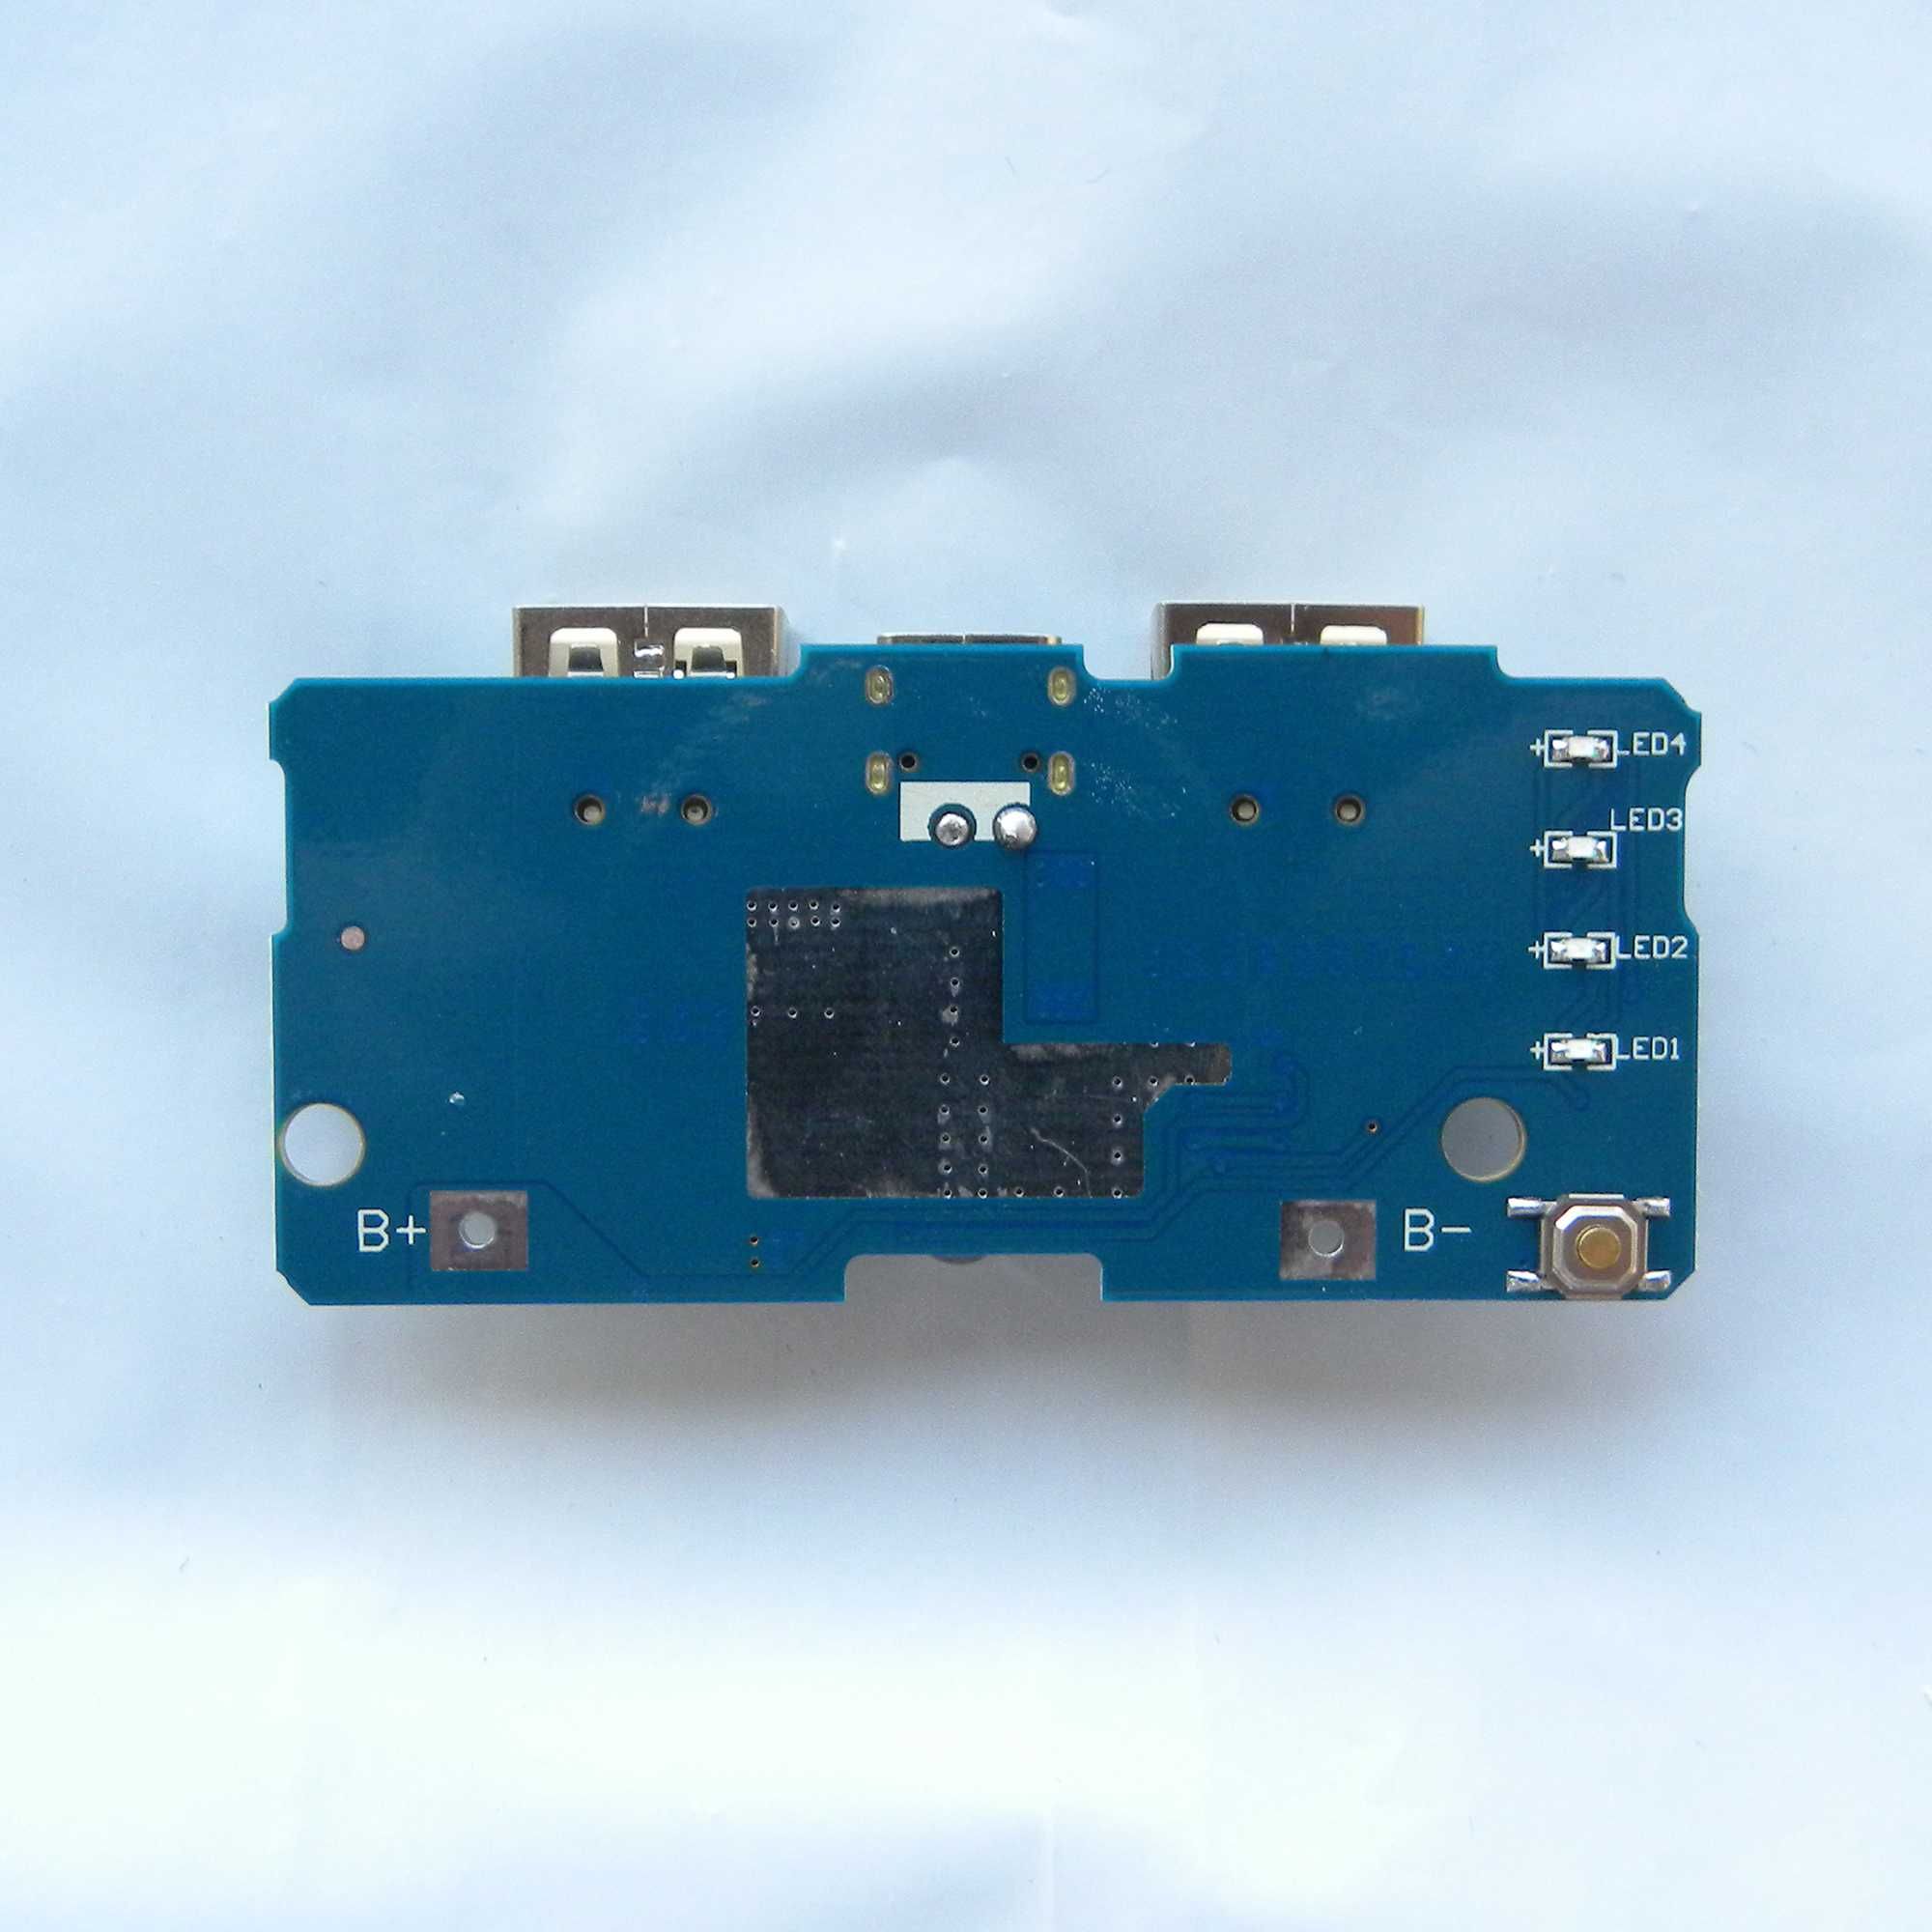 Модуль зарядки павербанку зі світлодіодом jx-887y